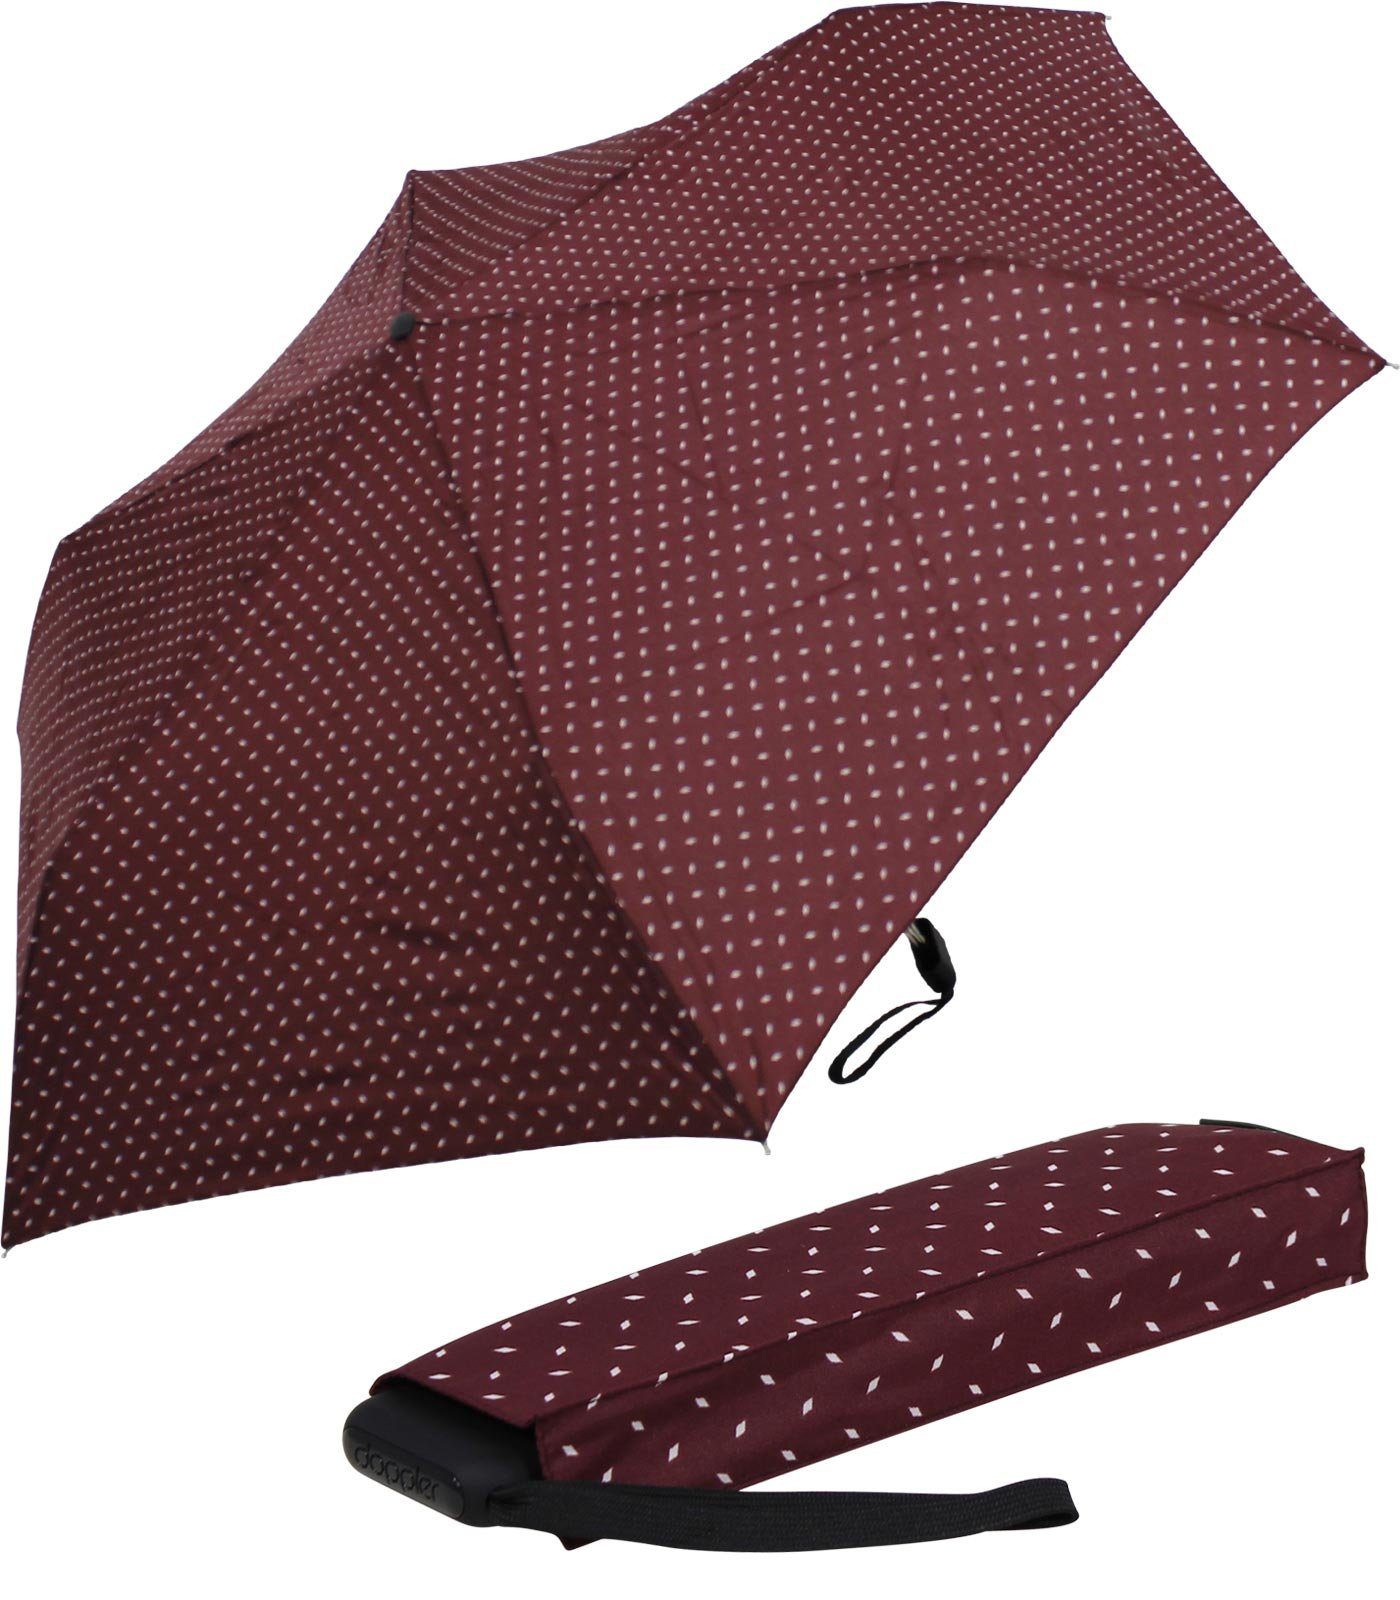 für flacher und dieser treue doppler® leichter ein Platz jede findet Schirm Tasche, bordeaux Begleiter Taschenregenschirm überall